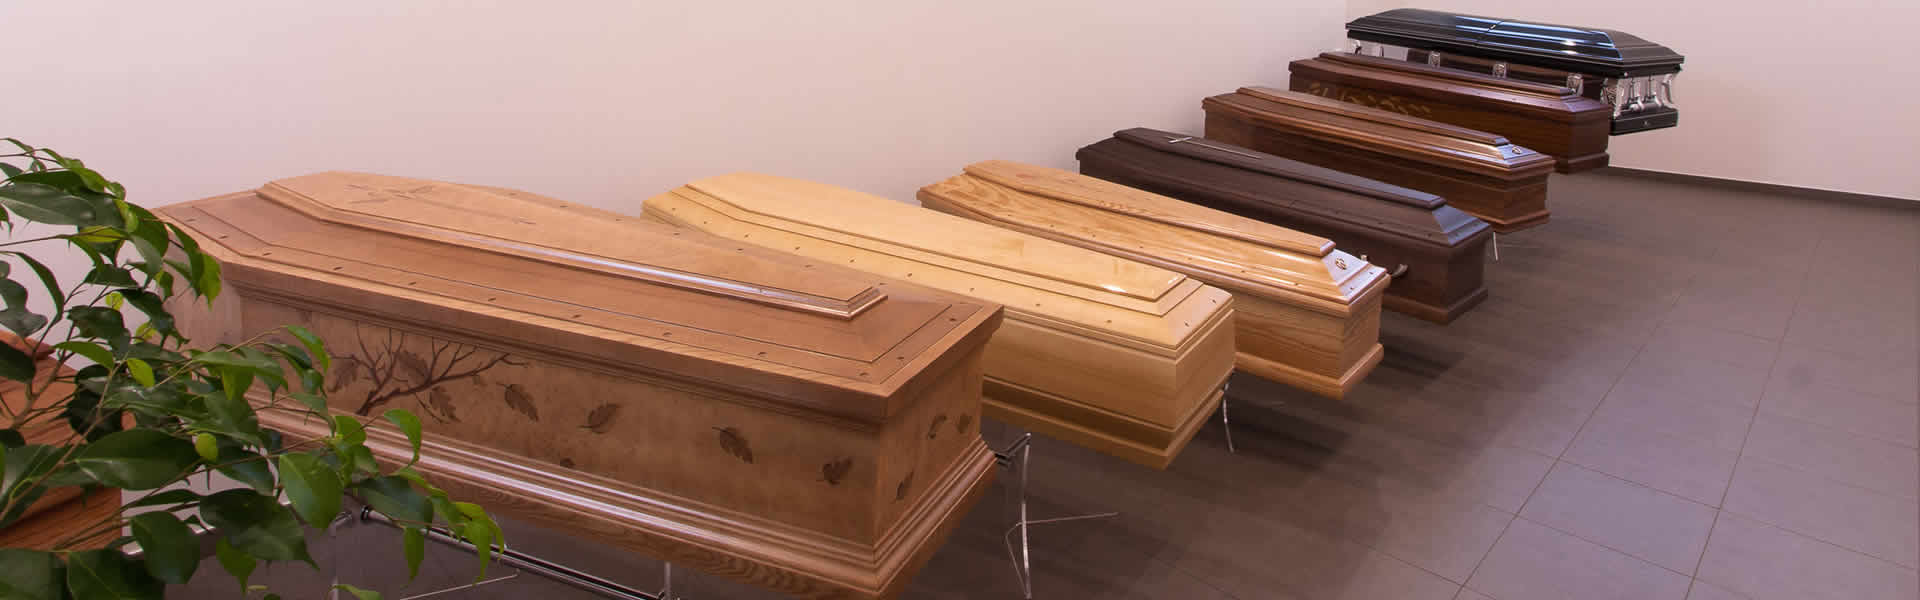 Esposizione cofani funebri in legno